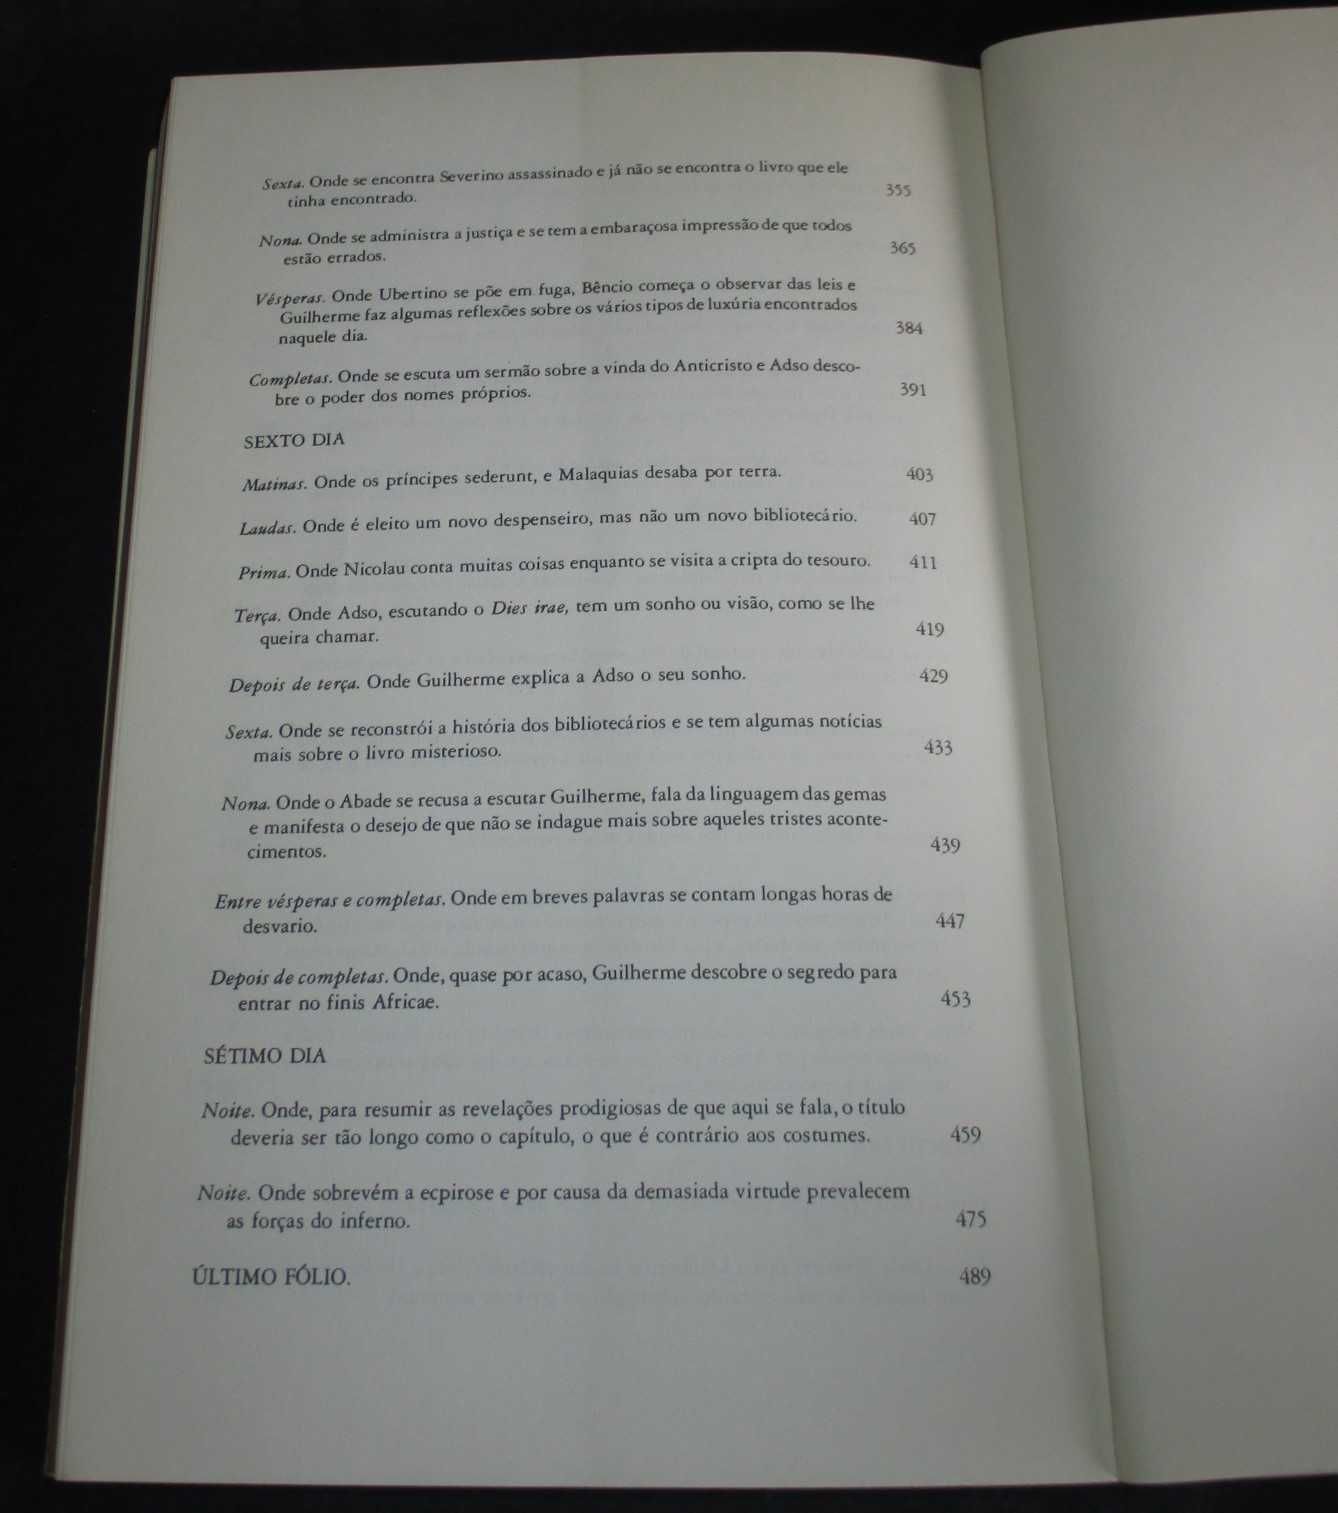 Livro O Nome da Rosa Umberto Eco Difel